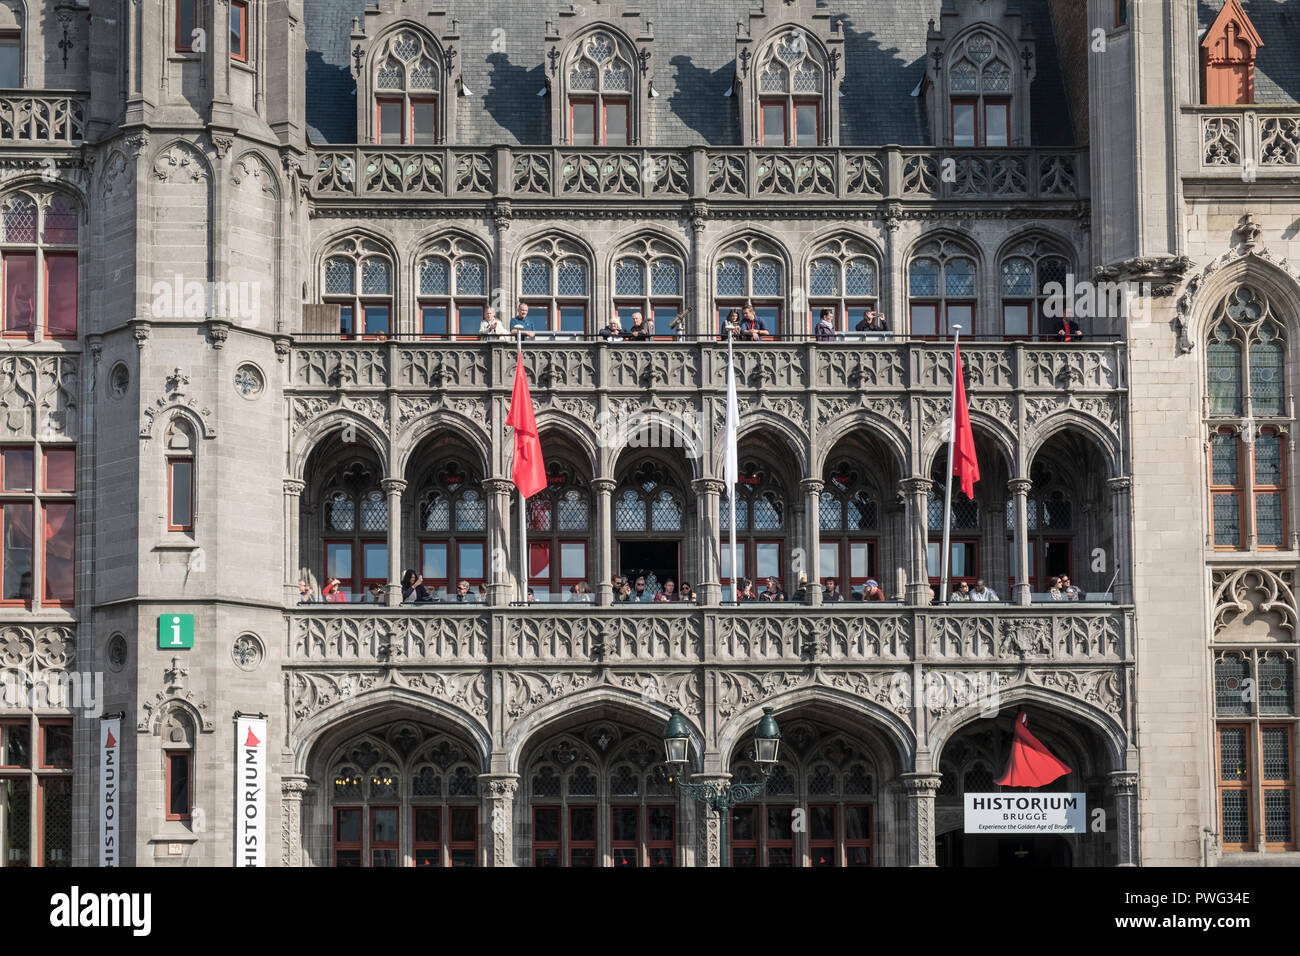 Neo Gothic architectural exterior of the Historium building in Markt, Bruges, Flanders, Belgium Stock Photo